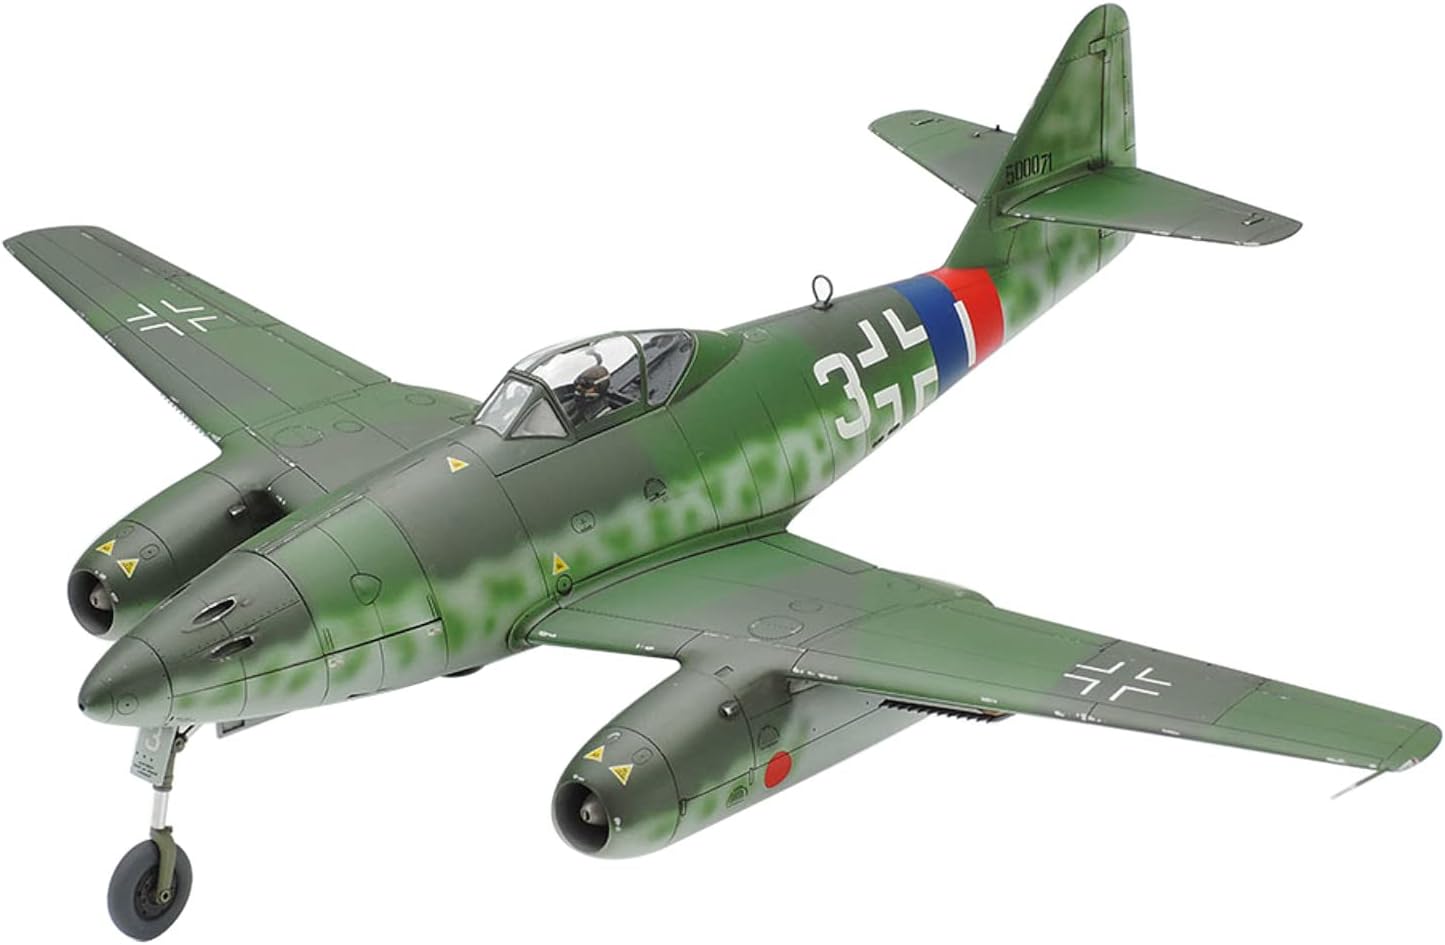 Tamiya 1/48th scale Messerschmitt Me262 A-1A